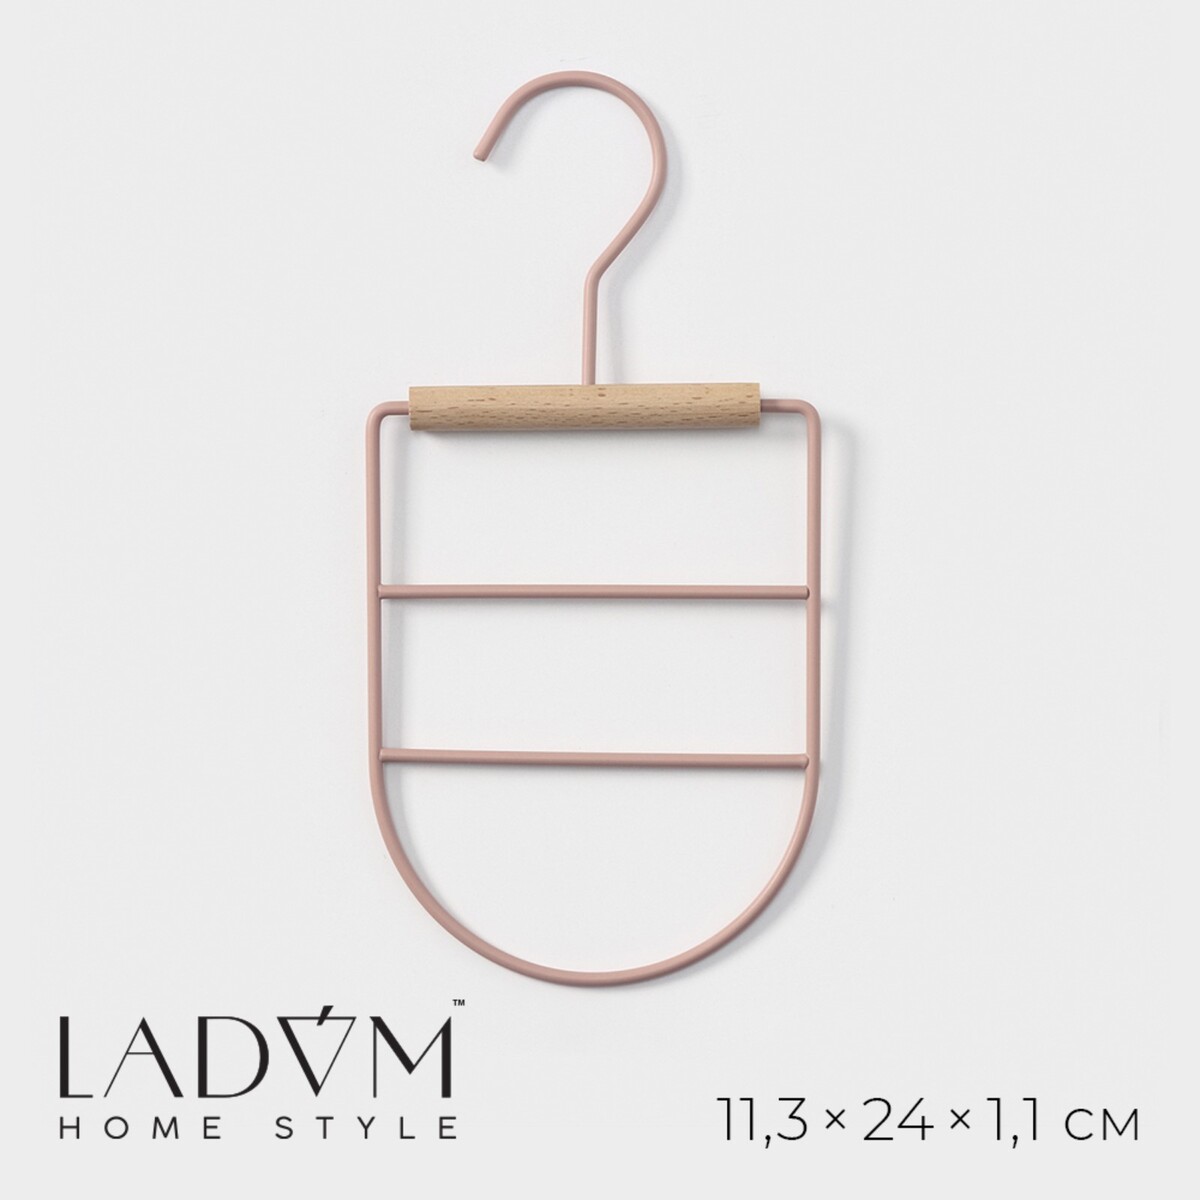 Вешалка органайзер для ремней и шарфов многоуровневая ladо́m laconique, 11,5×23×1,1 см, цвет розовый